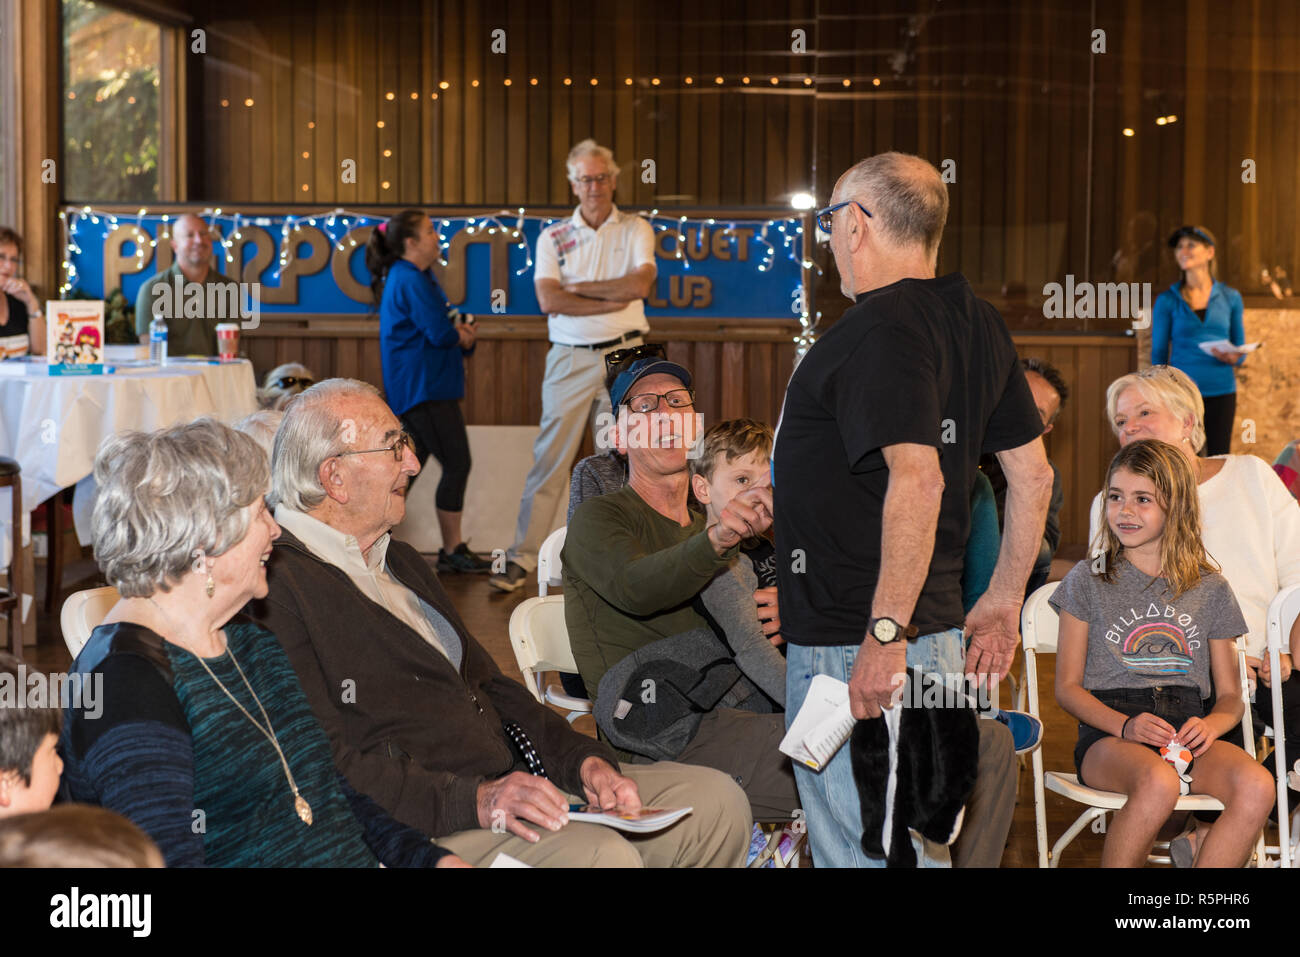 Californie, USA. 1er décembre 2018. Auteur Loriaux interagissant avec foule lors de dédicace à Pierpont Racquet Club à Ventura, Californie, USA le 1 décembre 2018. Crédit : Jon Osumi/Alamy Live News Banque D'Images